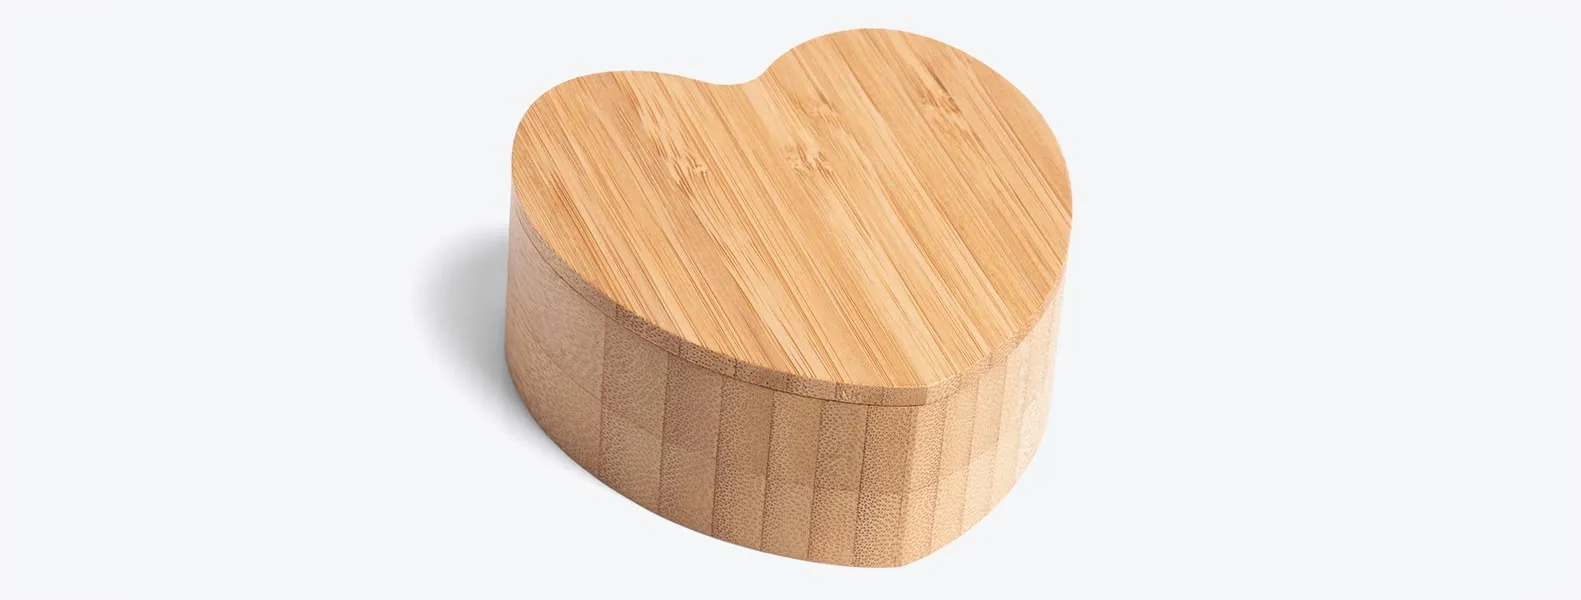 Porta objetos em Bambu com formato de coração.